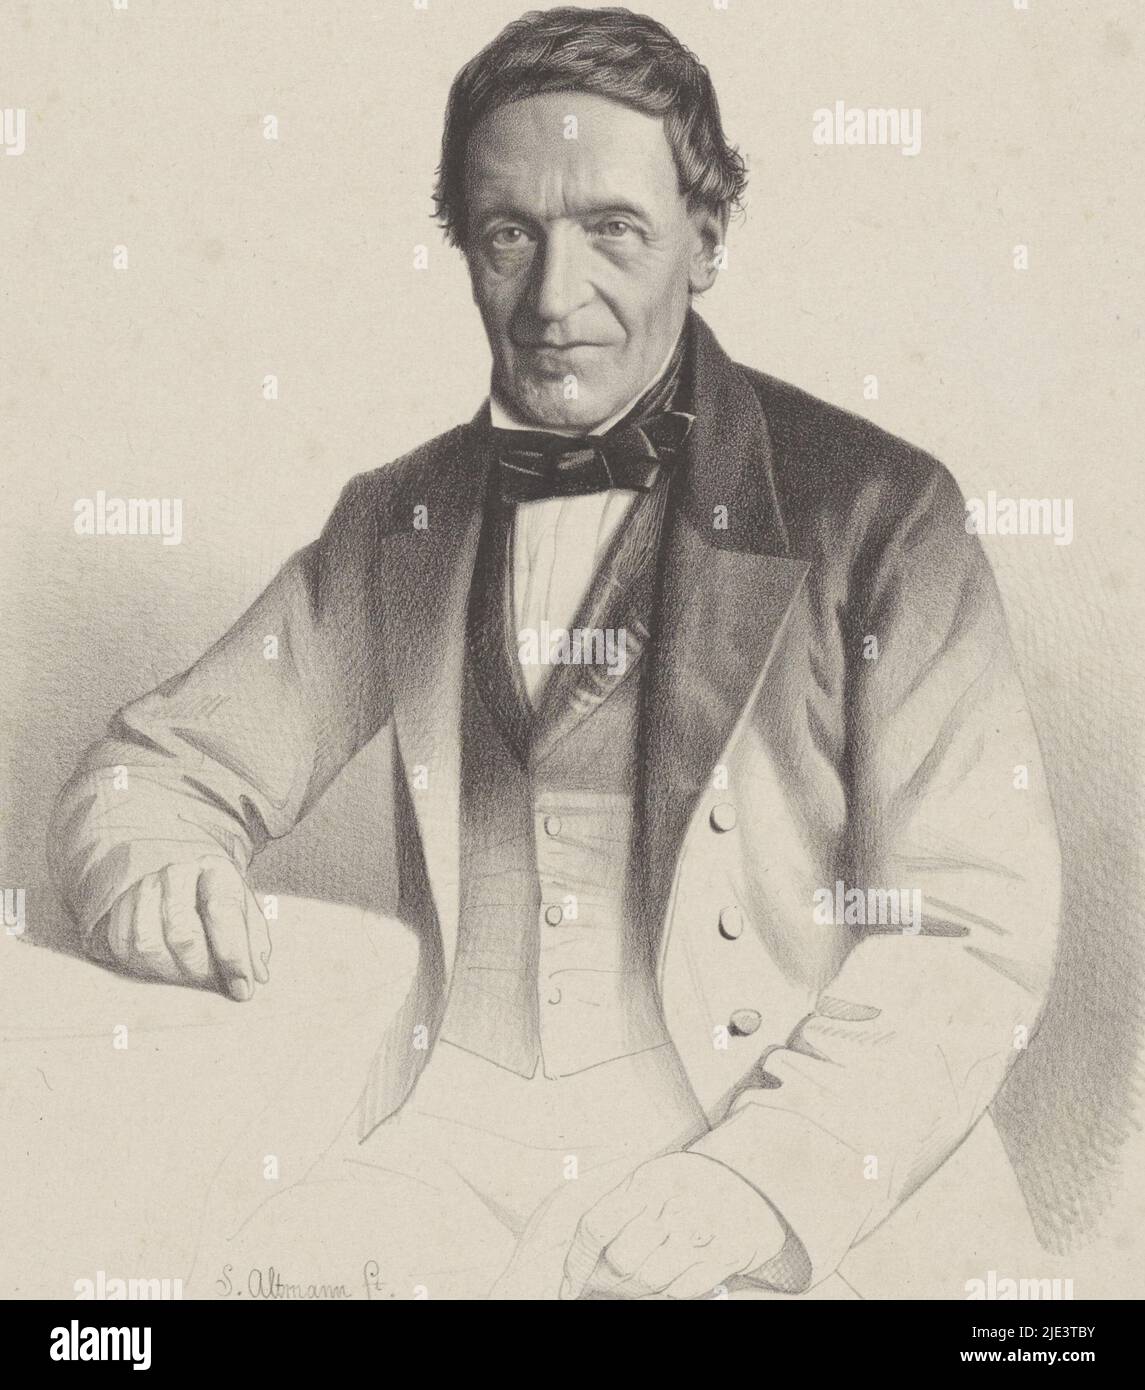 La personne représentée est assise à côté d'une table, Portrait de JG Roosenburg, imprimeur: Sybrand Altmann, (mentionné sur l'objet), anonyme, (mentionné sur l'objet), imprimeur: Desguerrois & Co., (mentionné sur l'objet), imprimeur: Pays-Bas, imprimeur: Amsterdam, éditeur: Amsterdam, 1832 - 1890, papier, h 485 mm × l 354 mm Banque D'Images